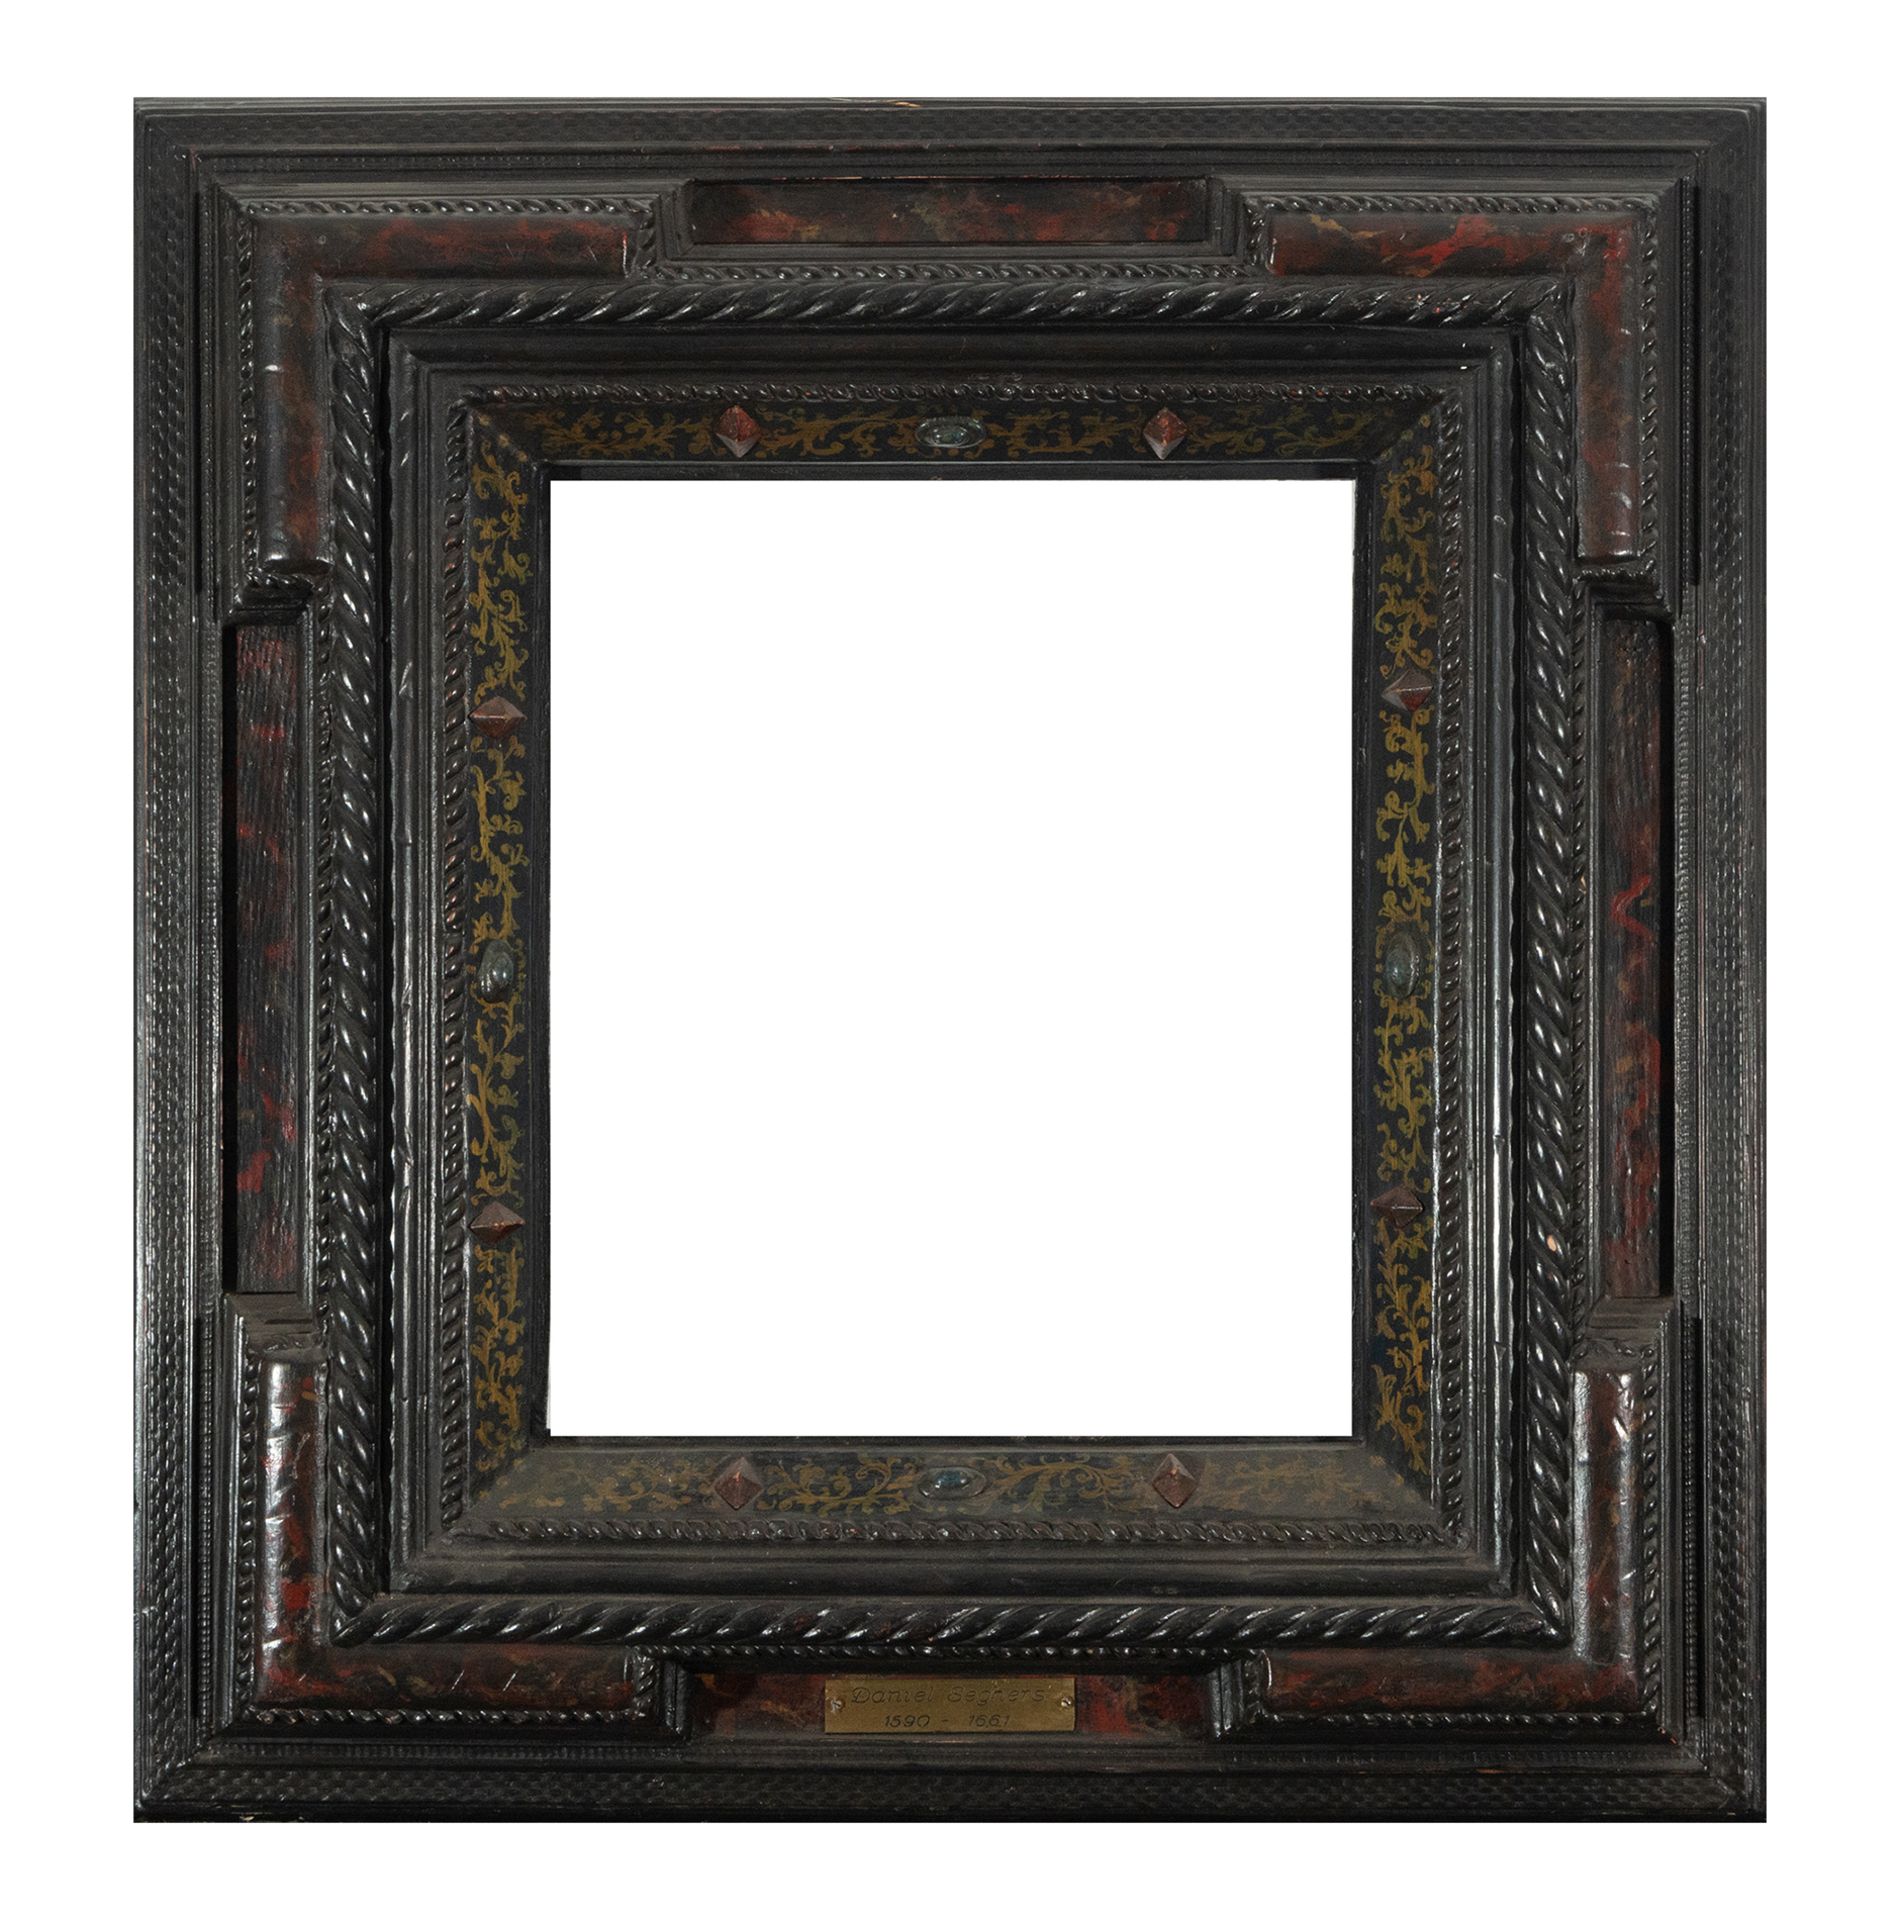 Flemish type frame in ebonized, polychrome and tortoiseshell-like curly wood, 19th century